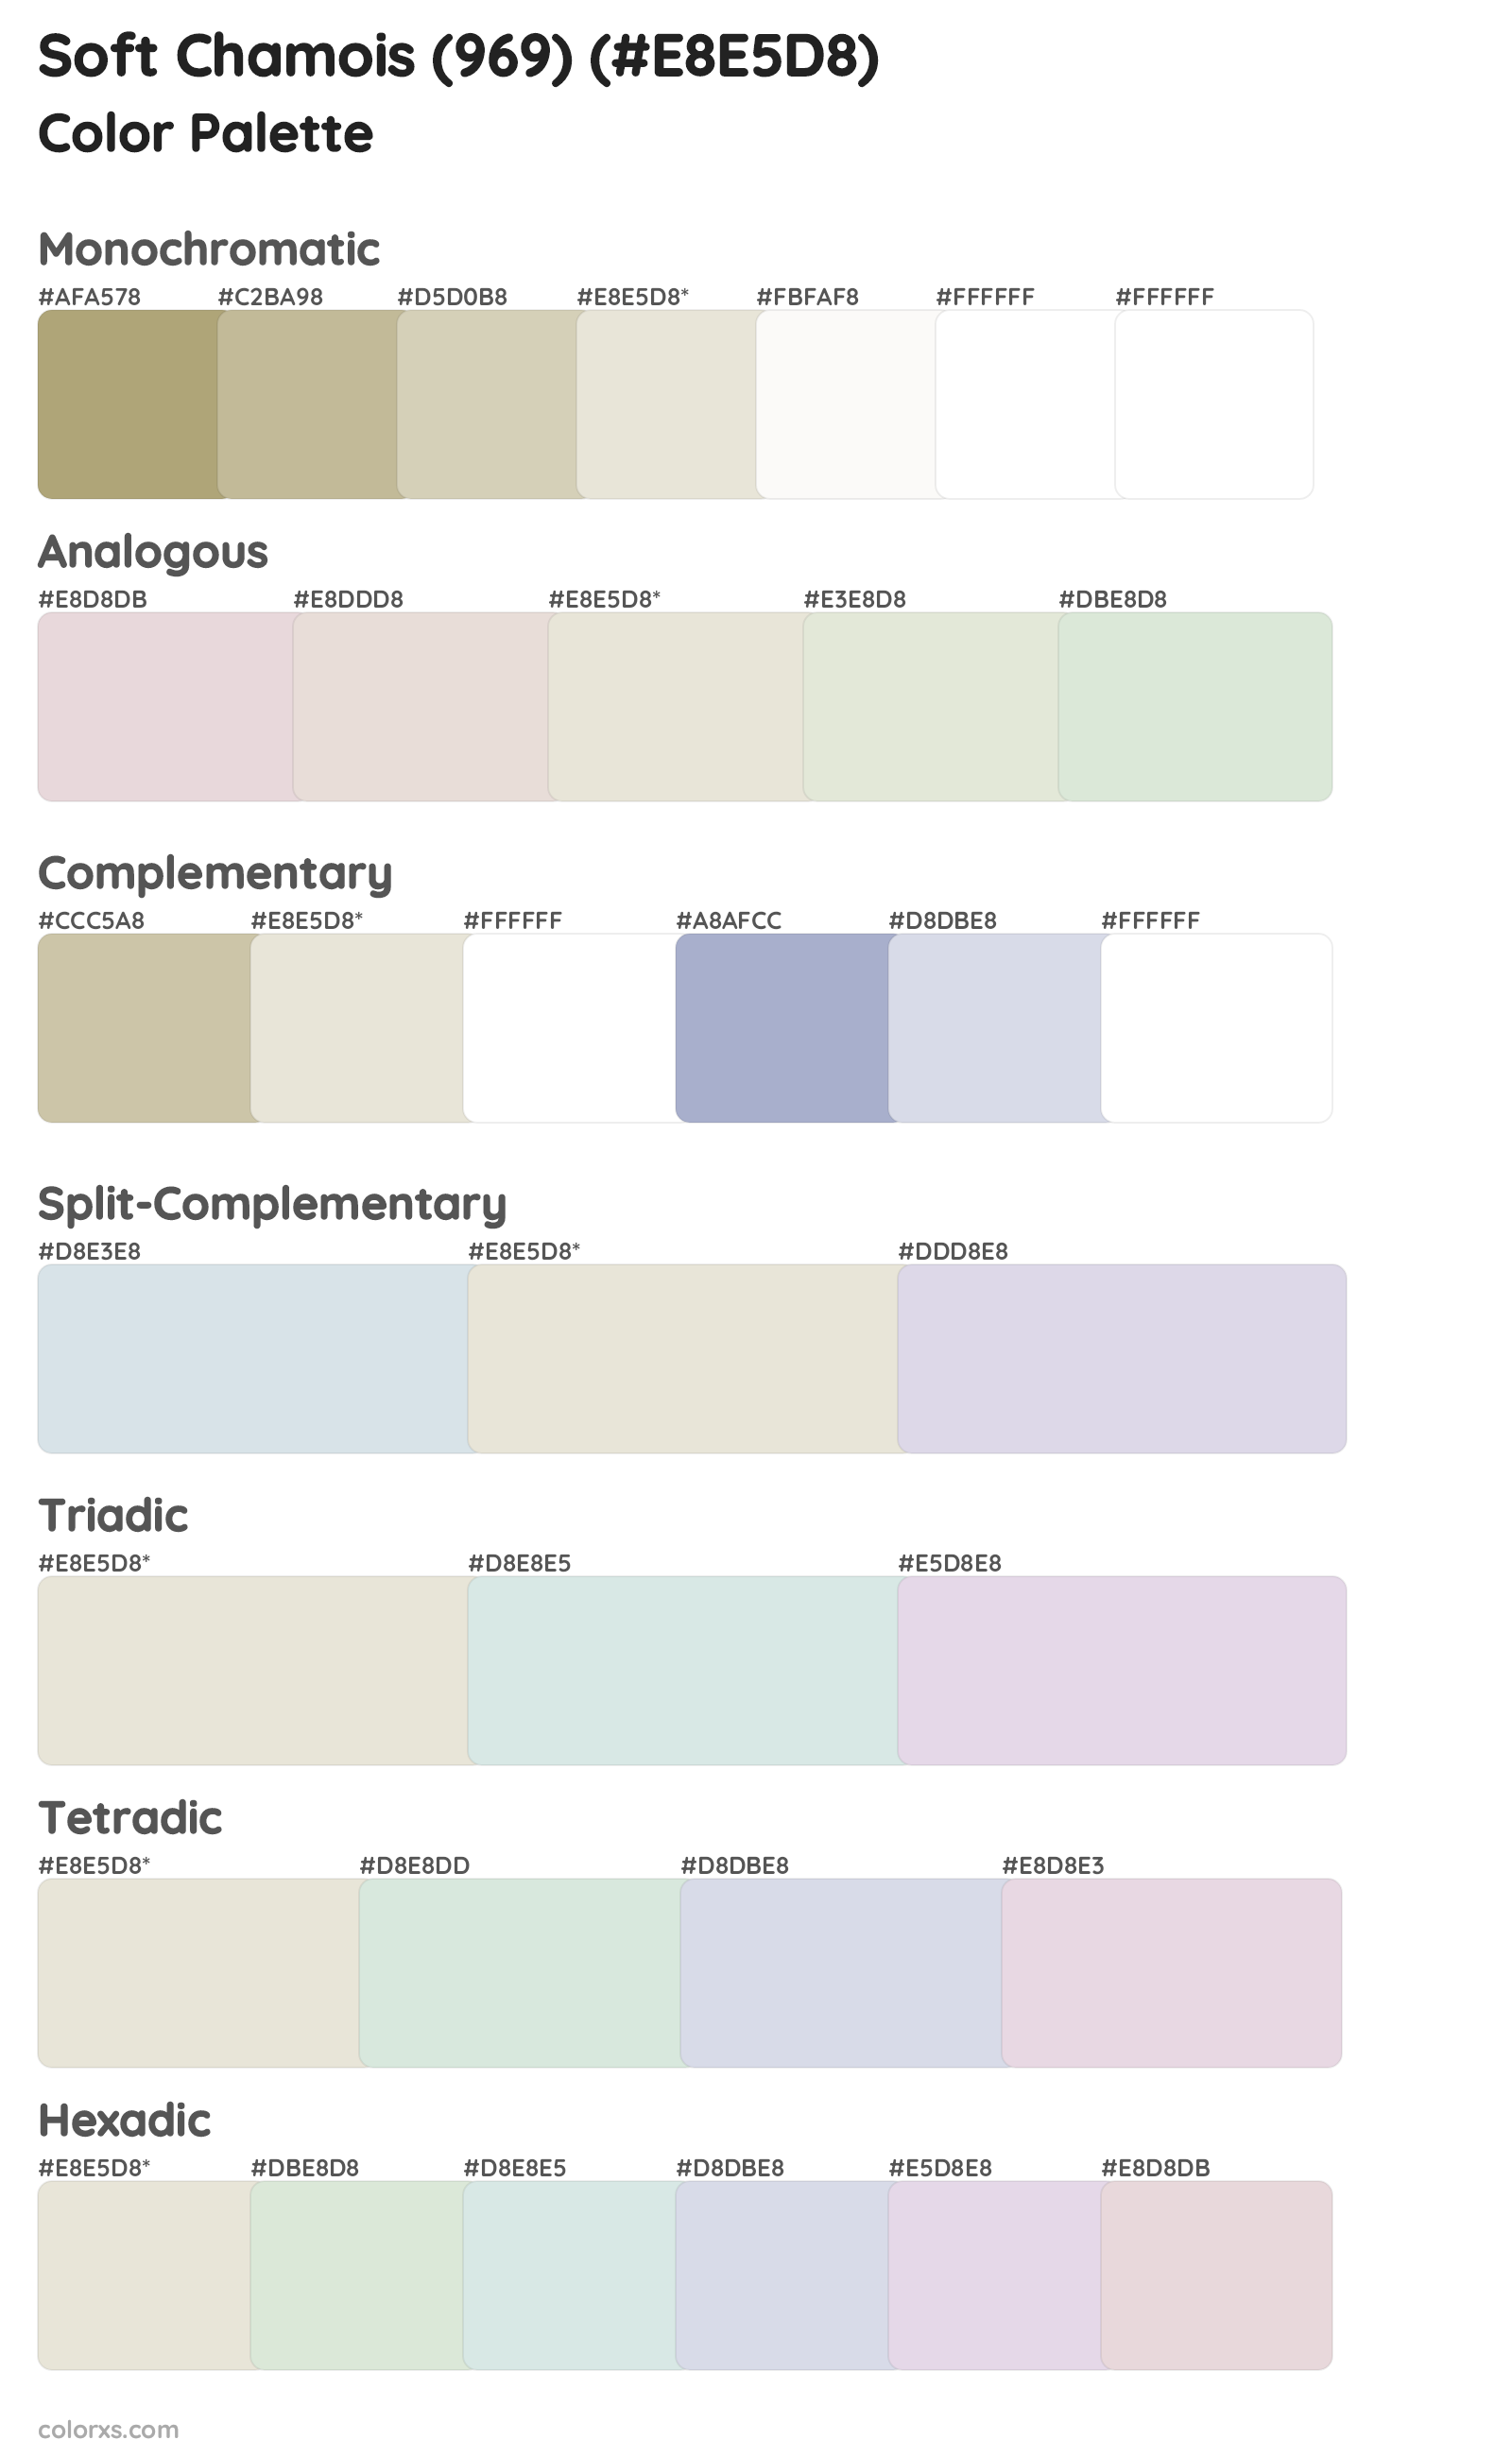 Soft Chamois (969) Color Scheme Palettes